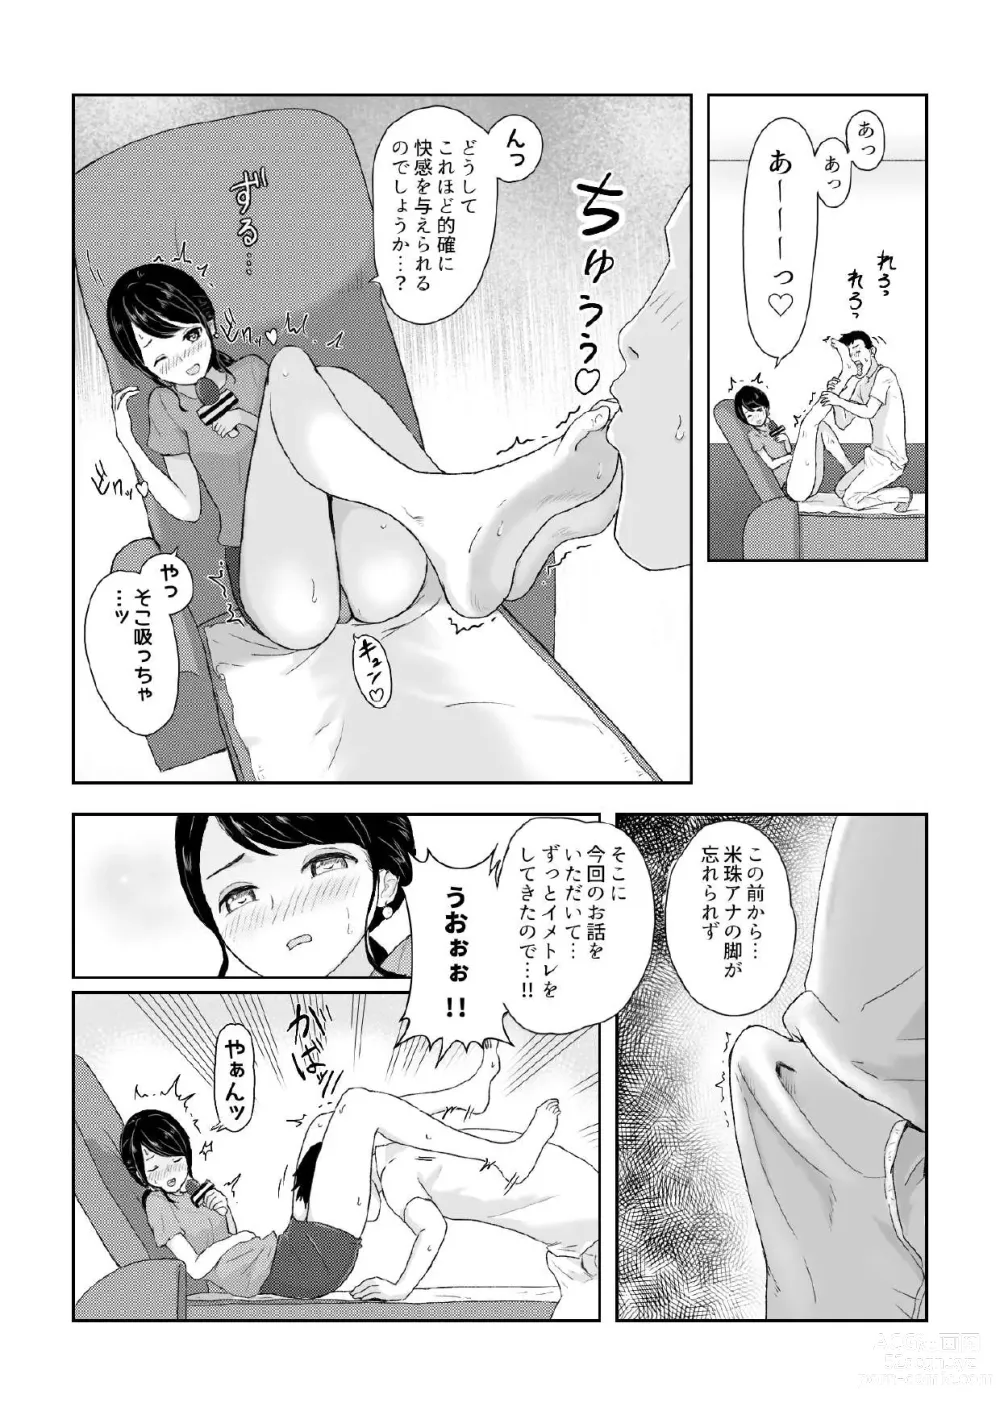 Page 5 of doujinshi Ana Ashi 2